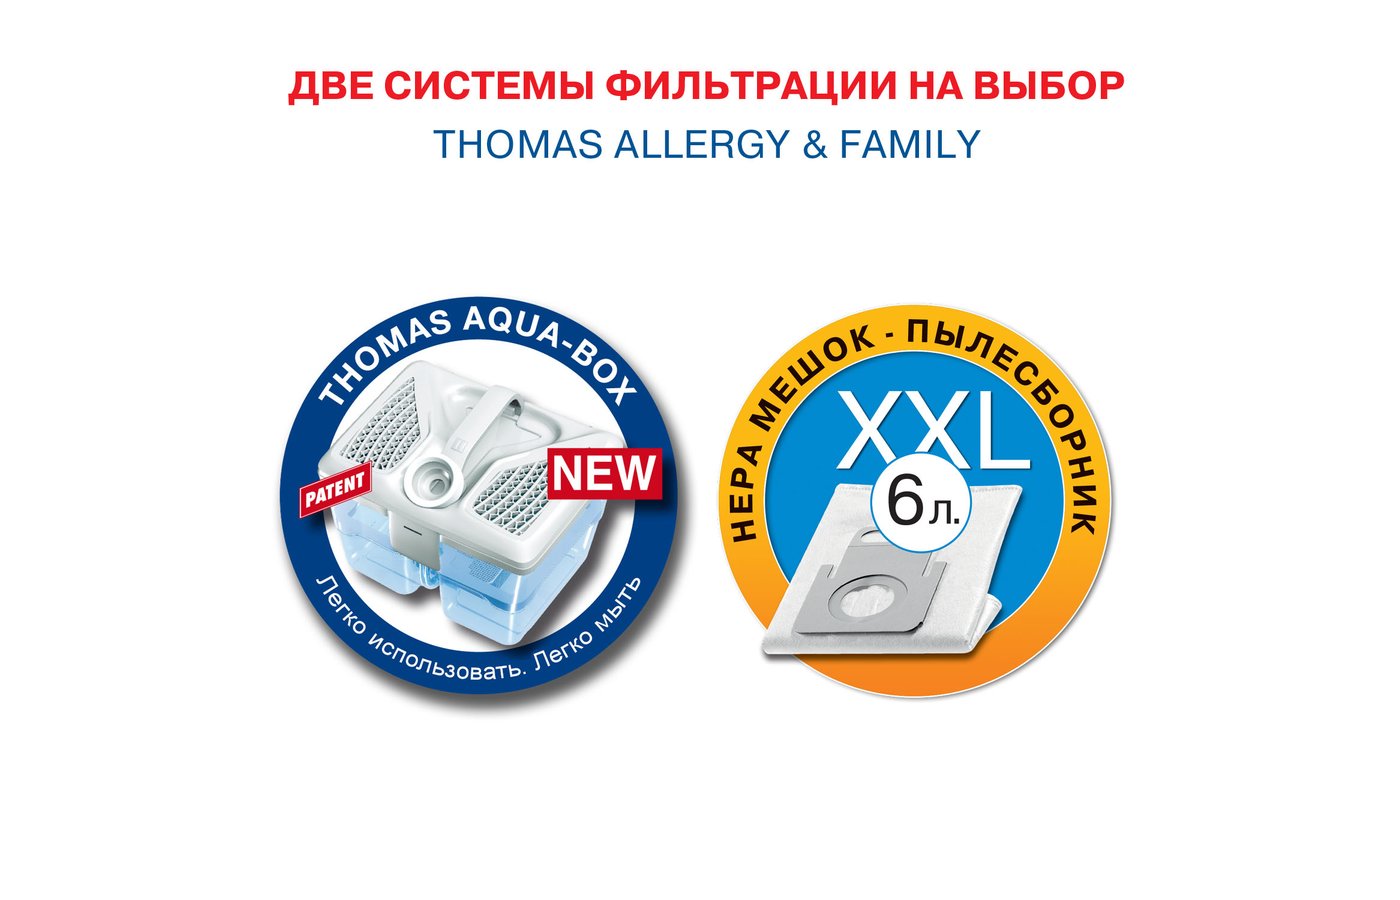 Пылесос Thomas 788585 Allergy & Family. Thomas Allergy & Family цены. Thomas Allergy Family полная комплектация.